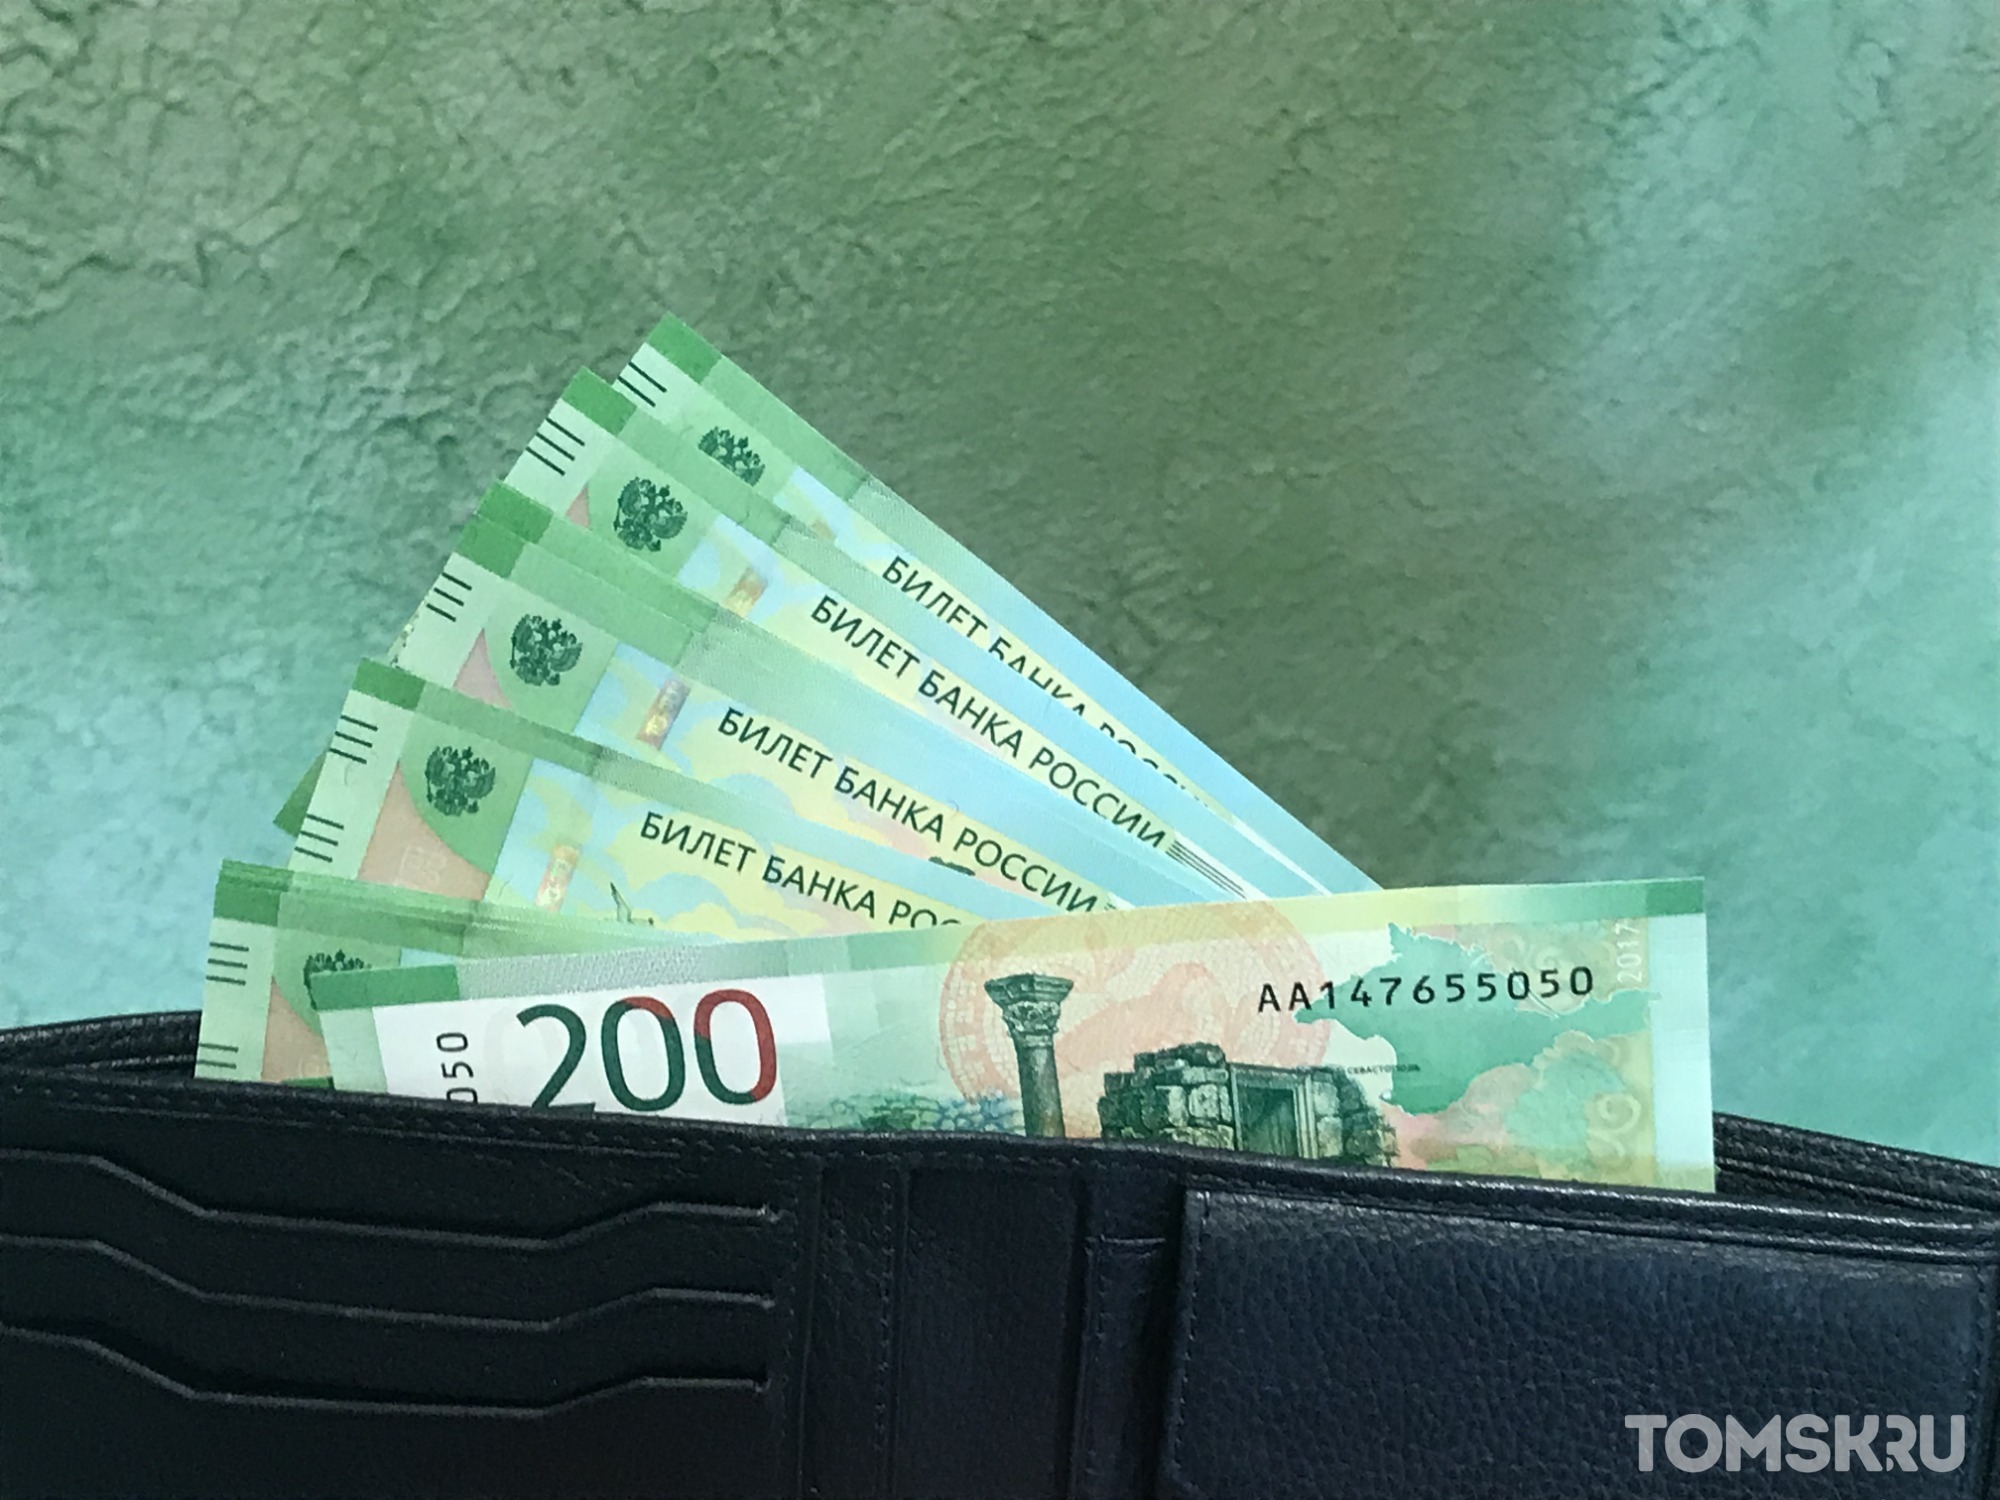 Томичи задолжали 280 миллионов рублей по имущественным налогам